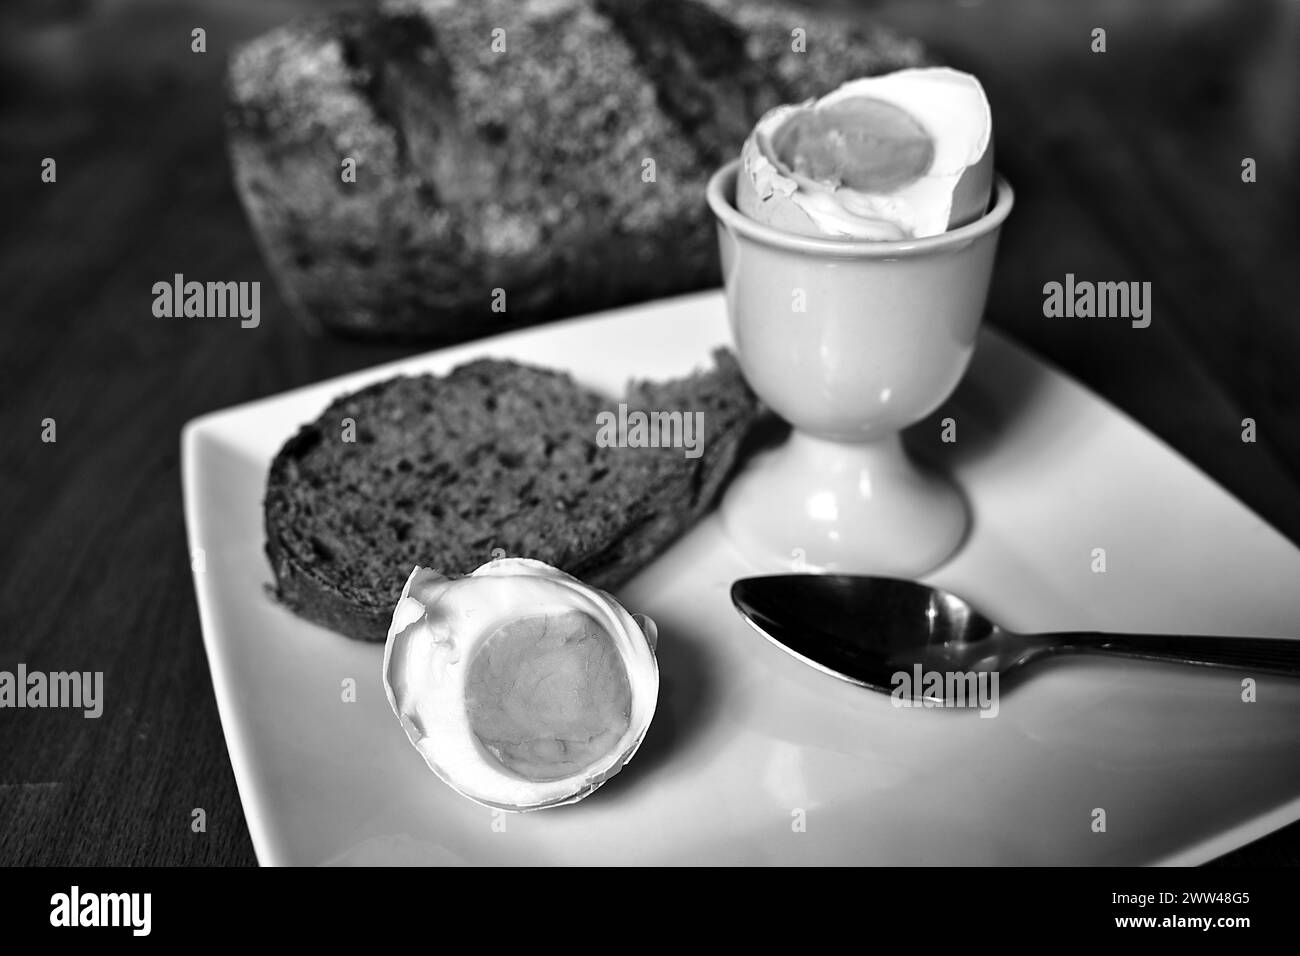 Un œuf dur, un morceau de pain et une cuillère en métal sur une assiette en Pologne, monochrome Banque D'Images